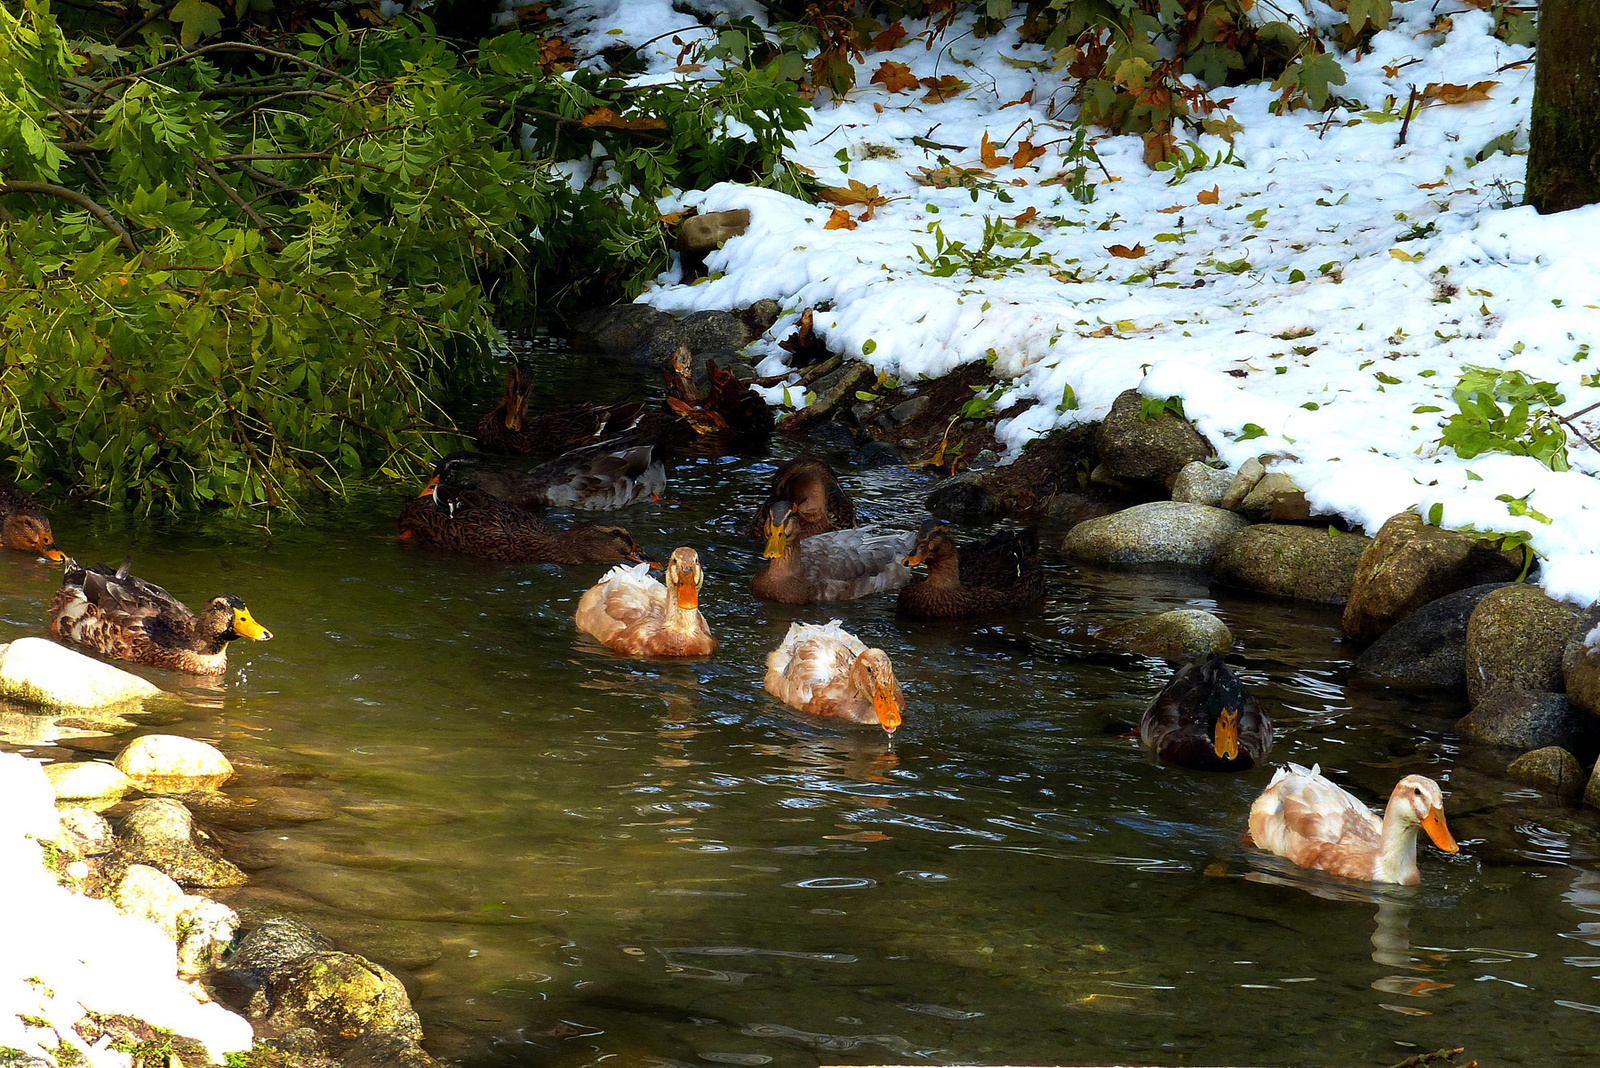 10 A kacsák bírják a hideg vizet